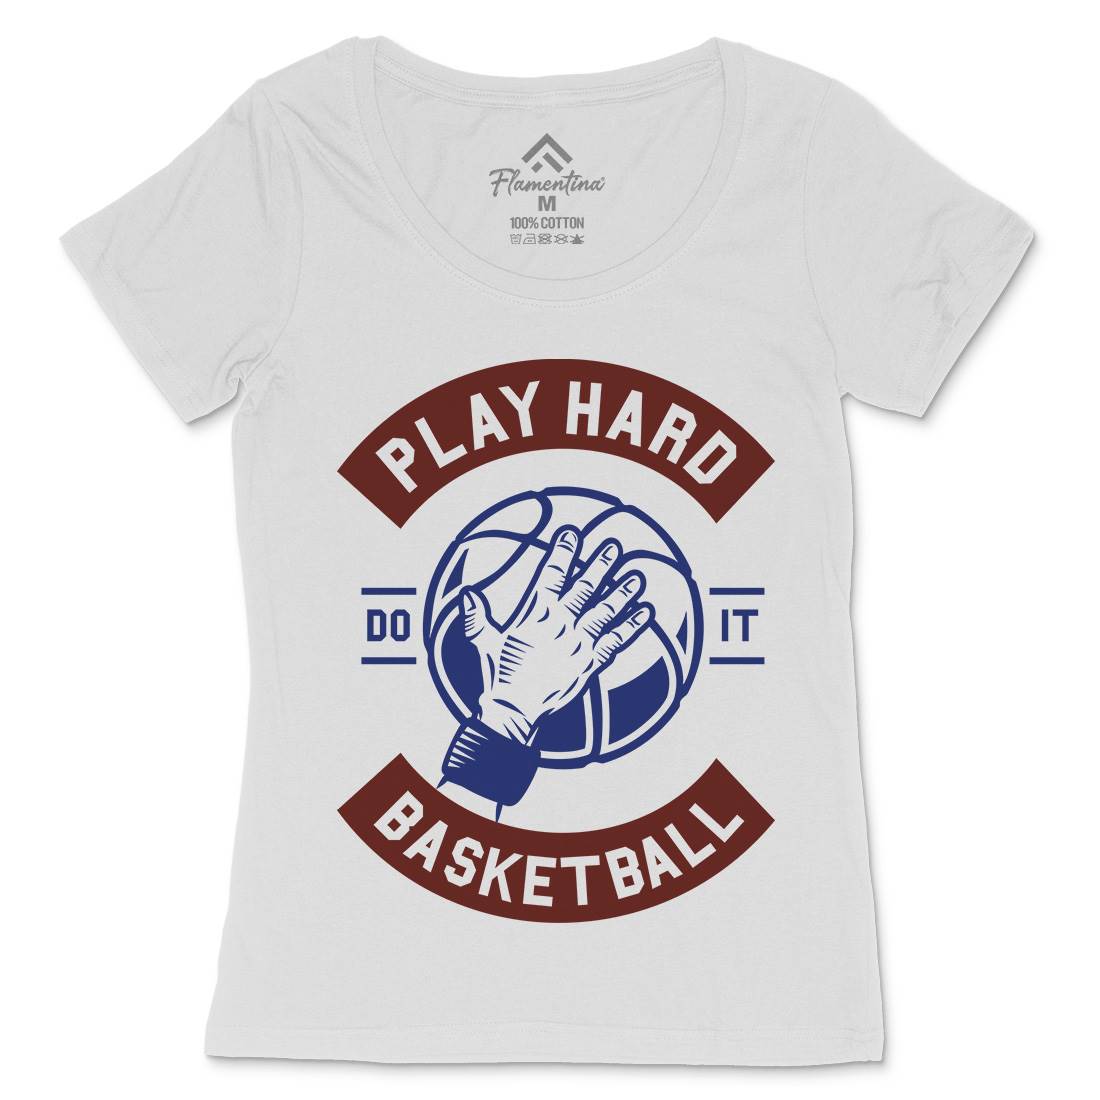 Play Hard Basketball Womens Scoop Neck T-Shirt Sport A261